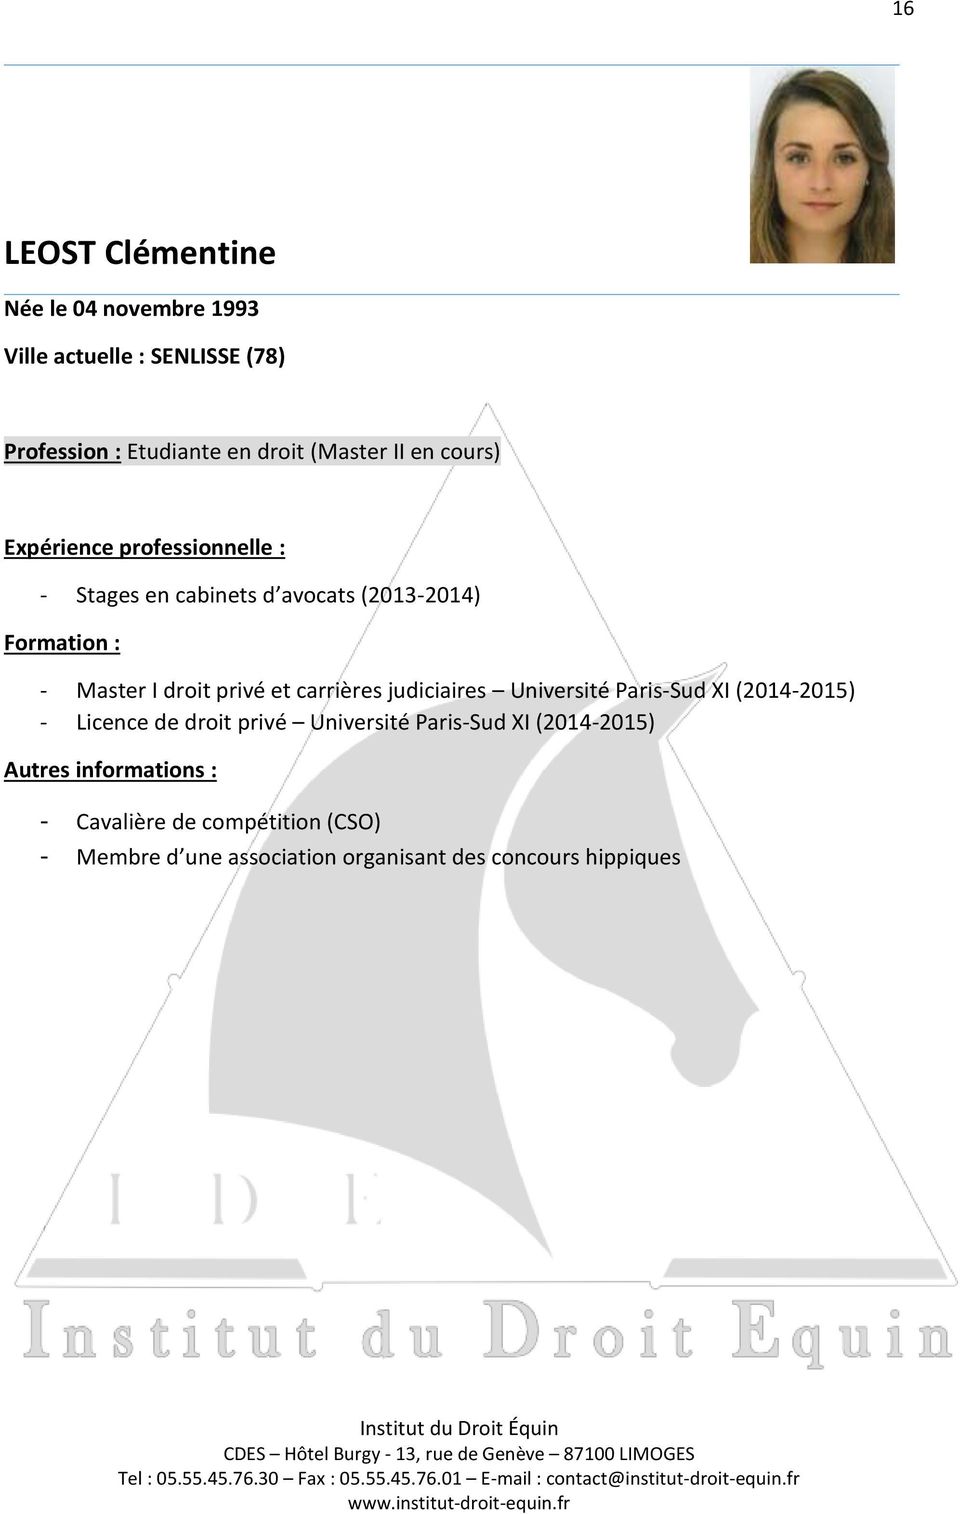 carrières judiciaires Université Paris-Sud XI (2014-2015) - Licence de droit privé Université